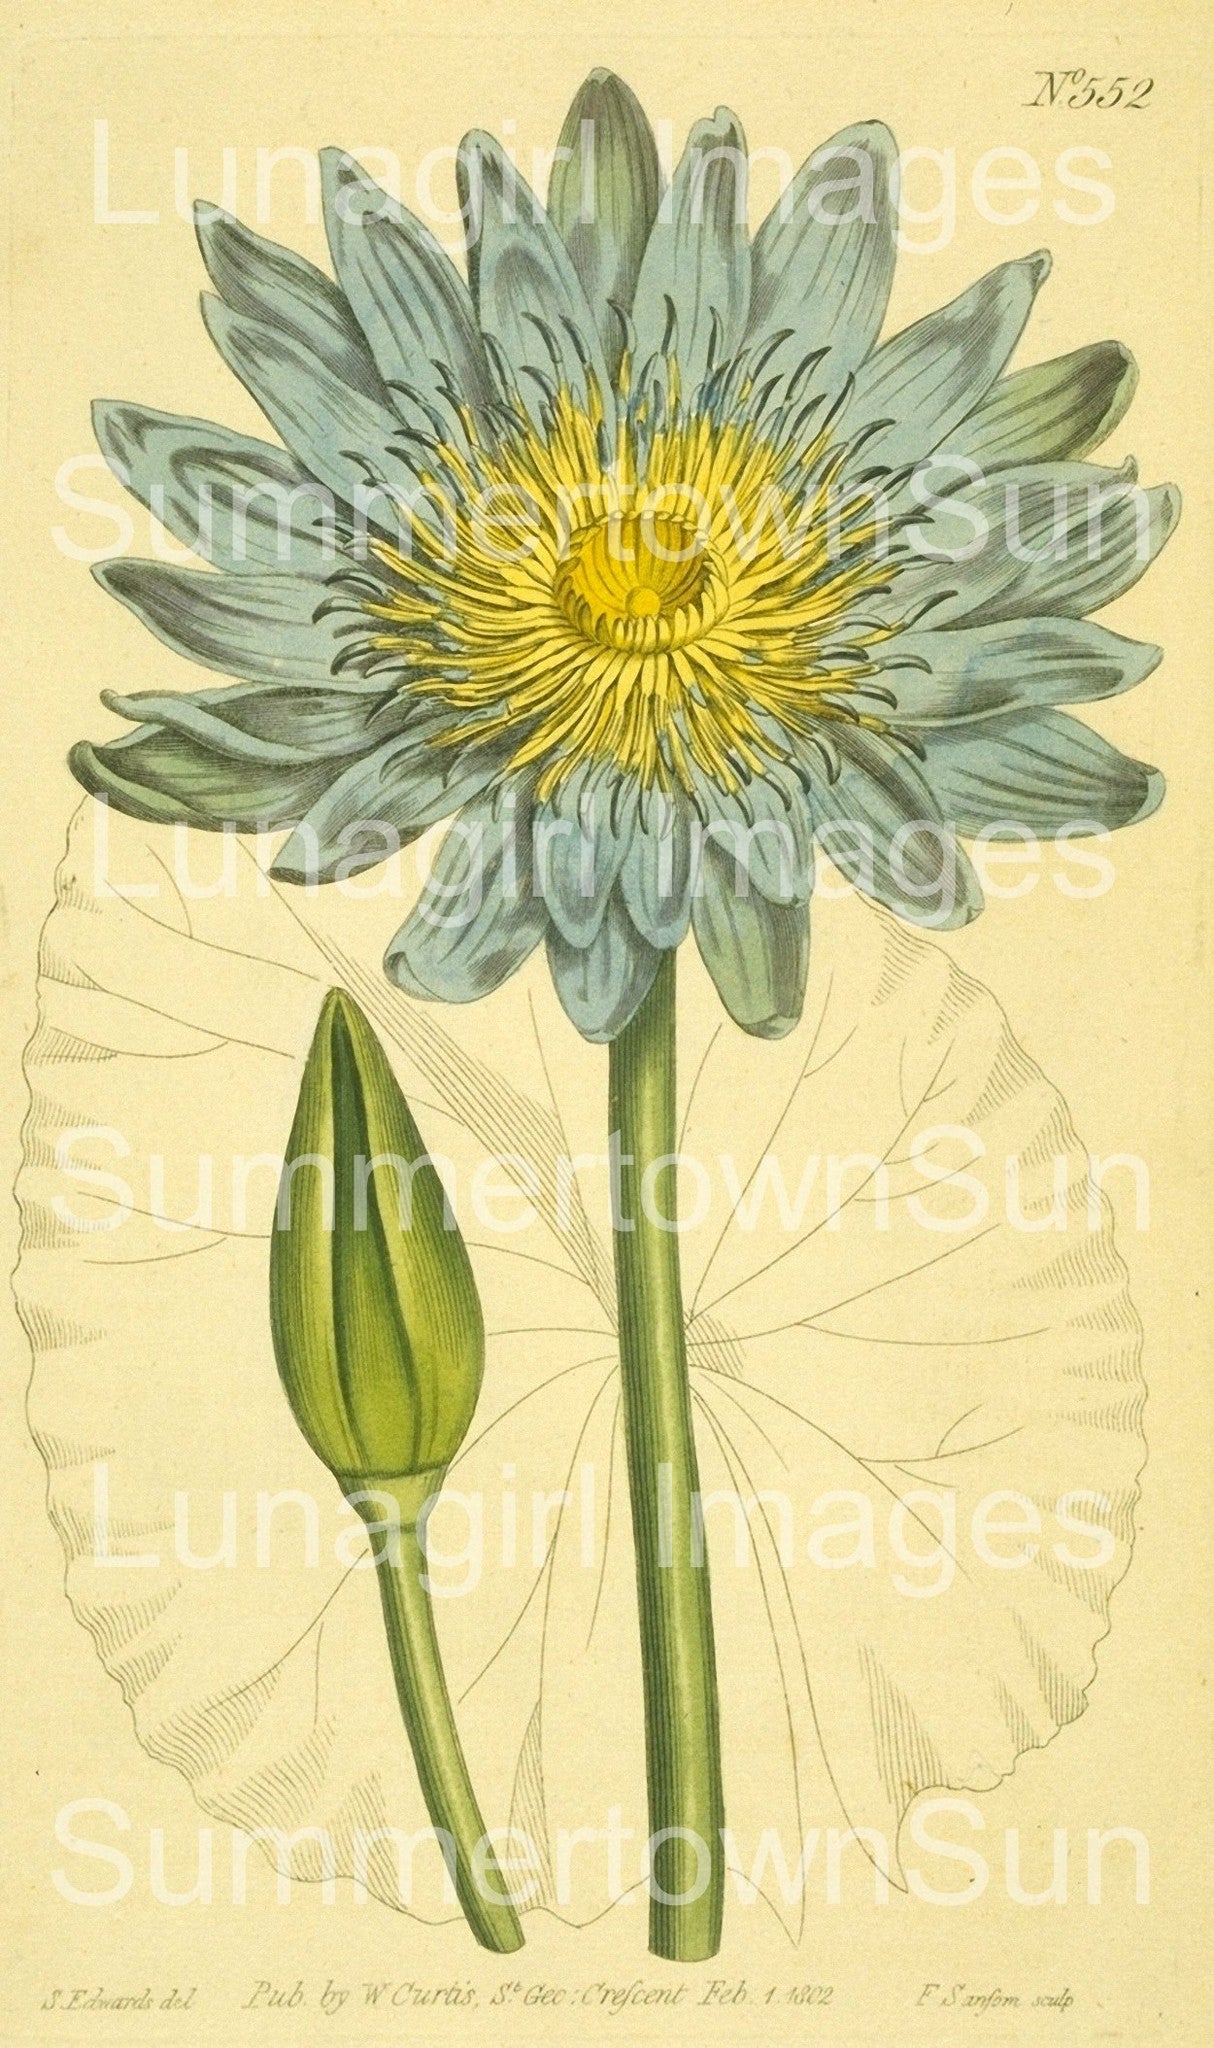 Curtis Botanical Prints: 60 images - Lunagirl